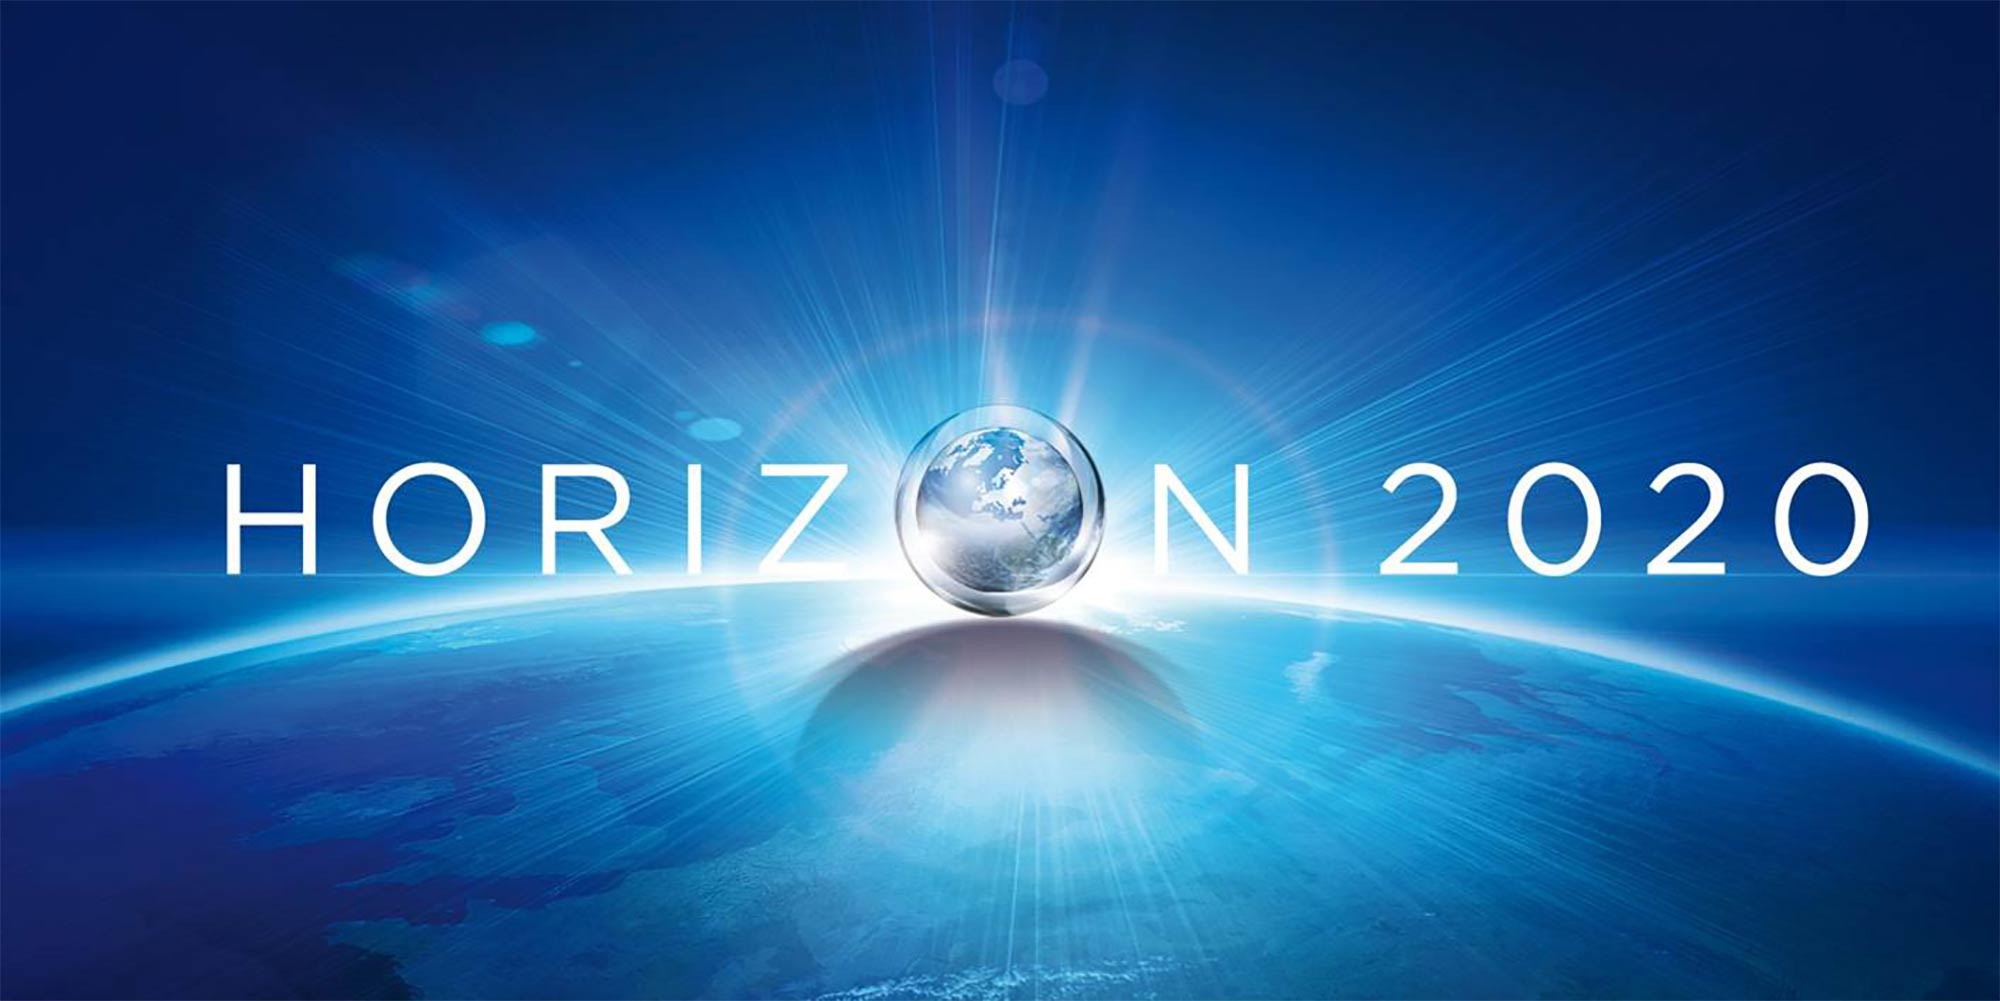 Image of Horizon 2020 logo